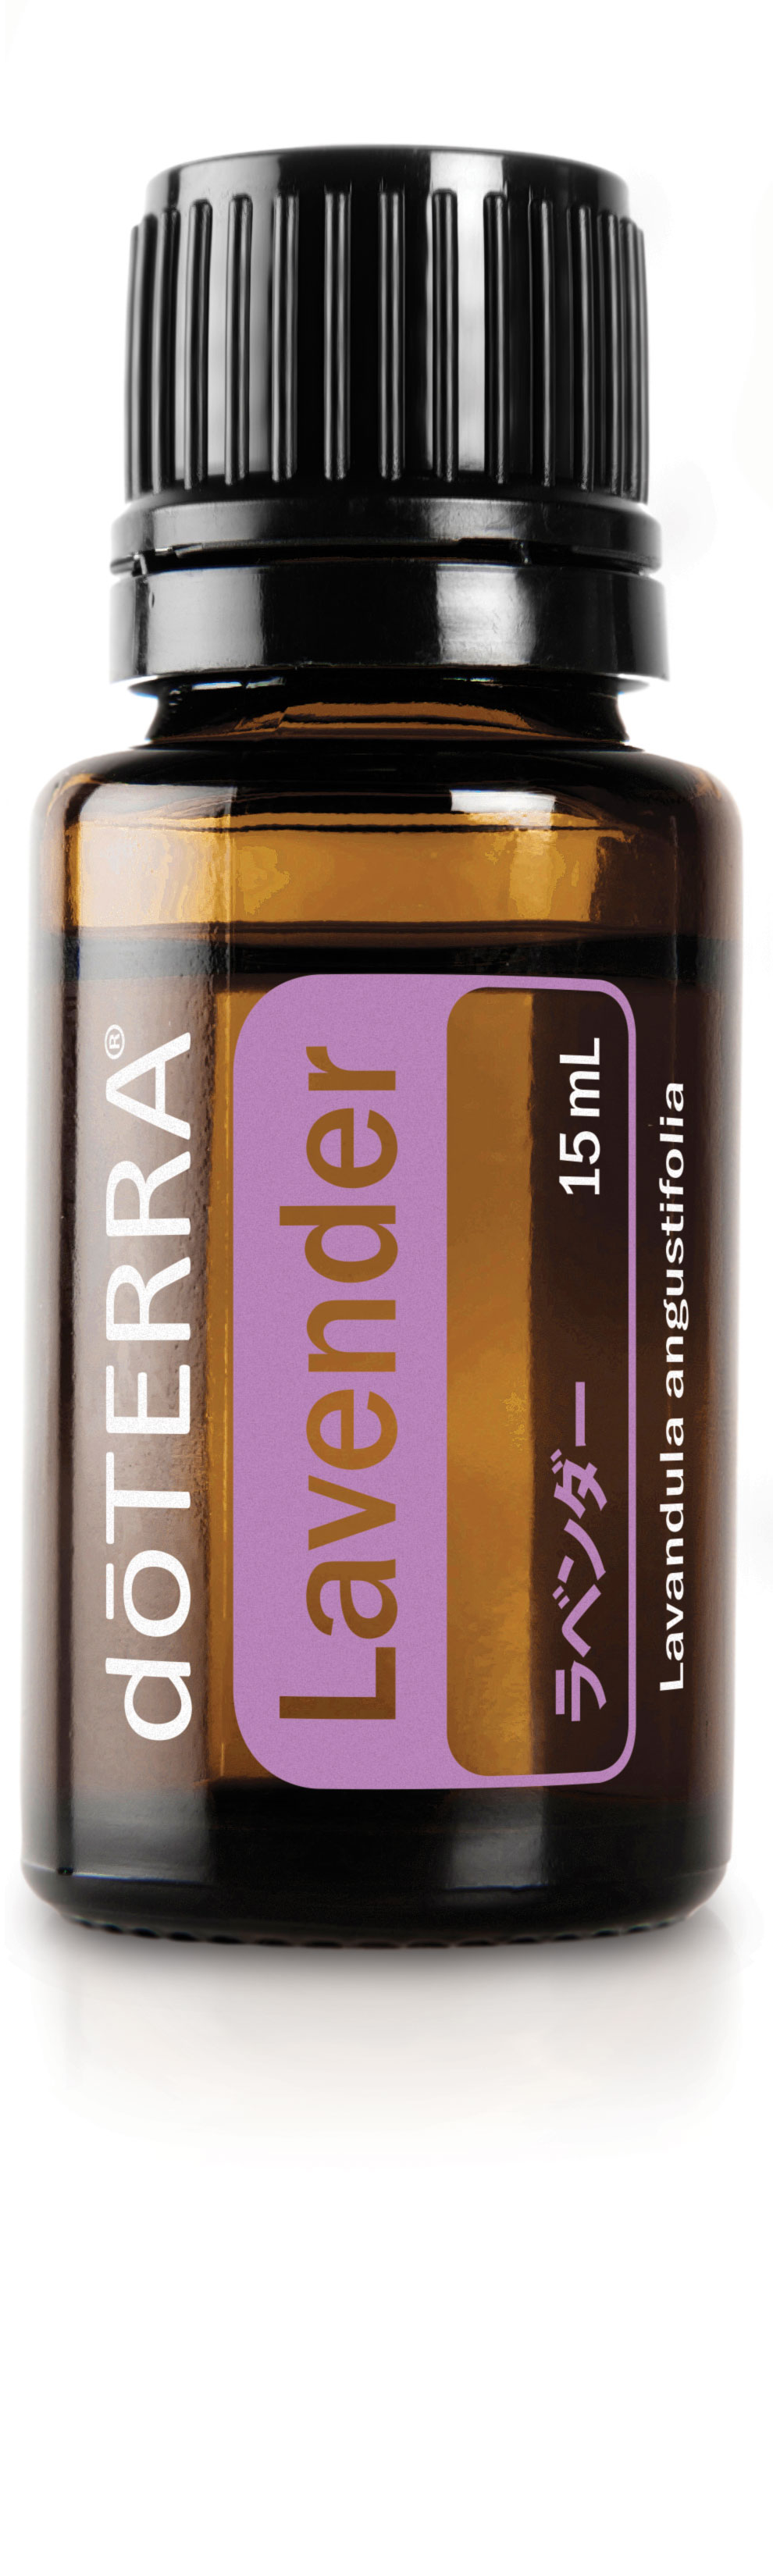 ラベンダー | doTERRA エッセンシャルオイル | doTERRA Essential Oils